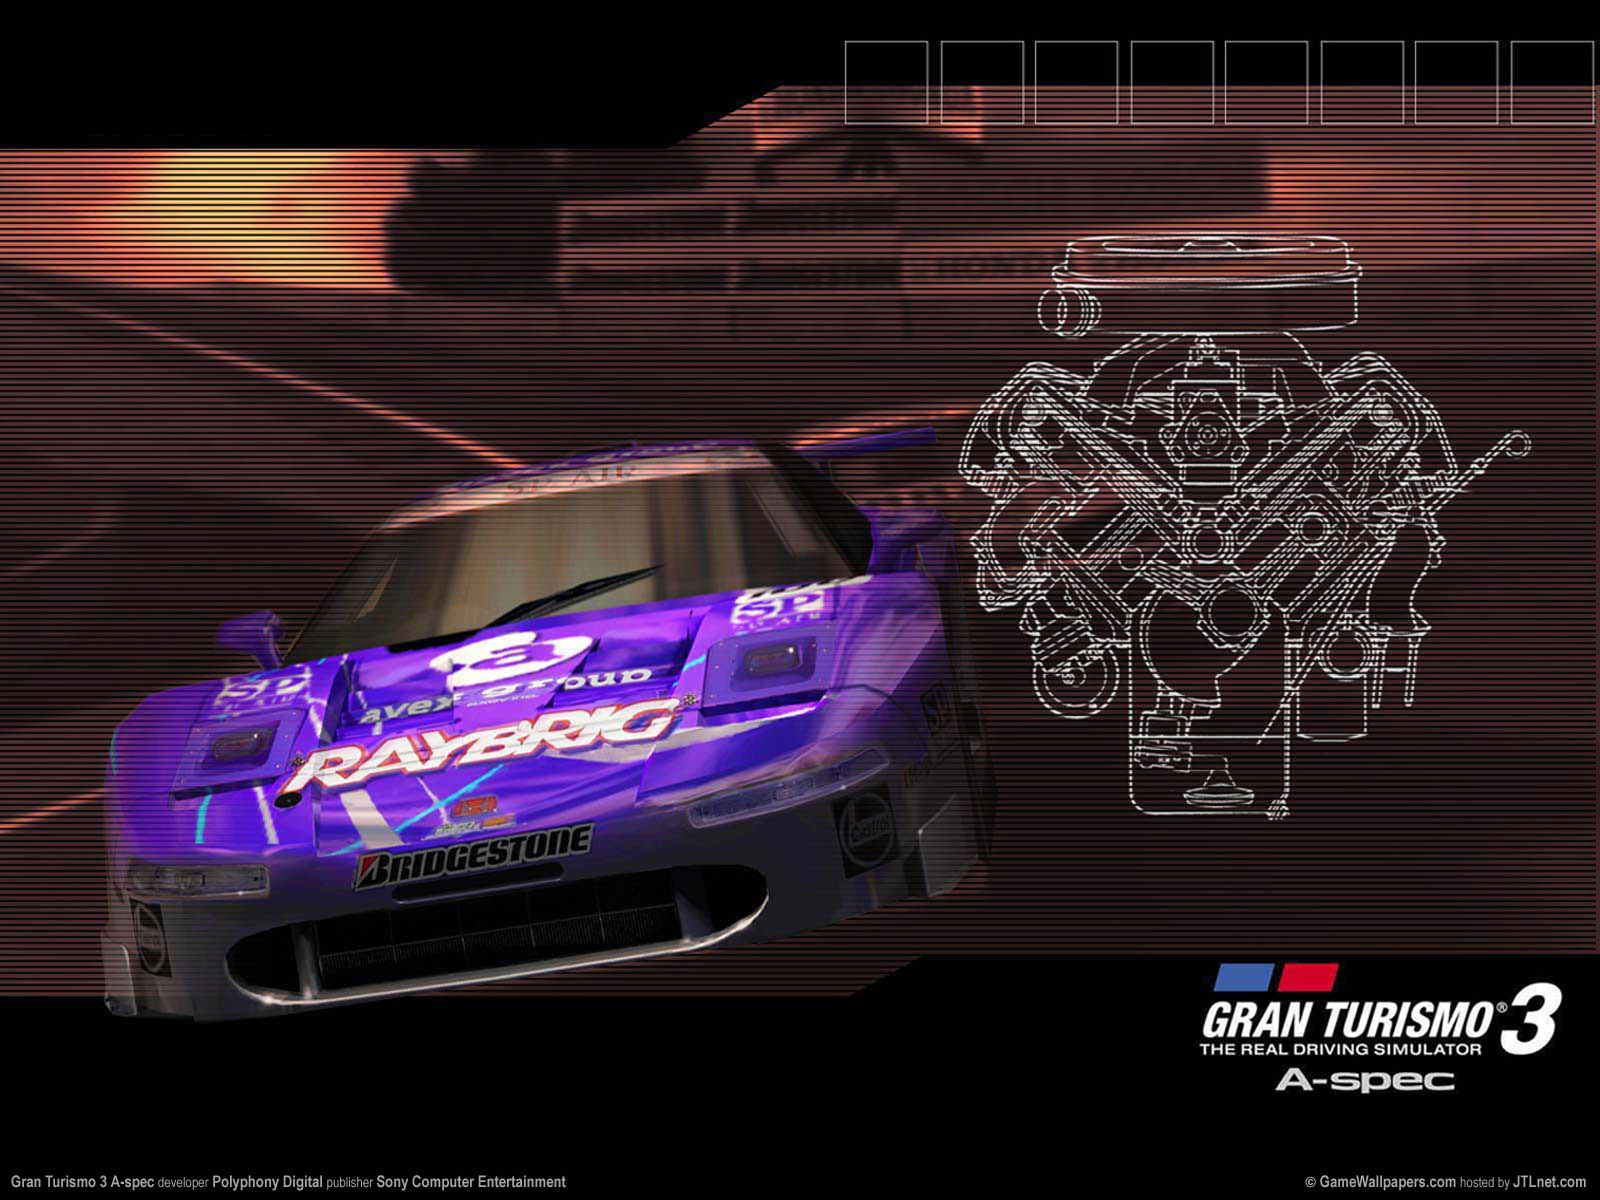 Gran Turismo 3 A-spec fond d'cran 02 1600x1200